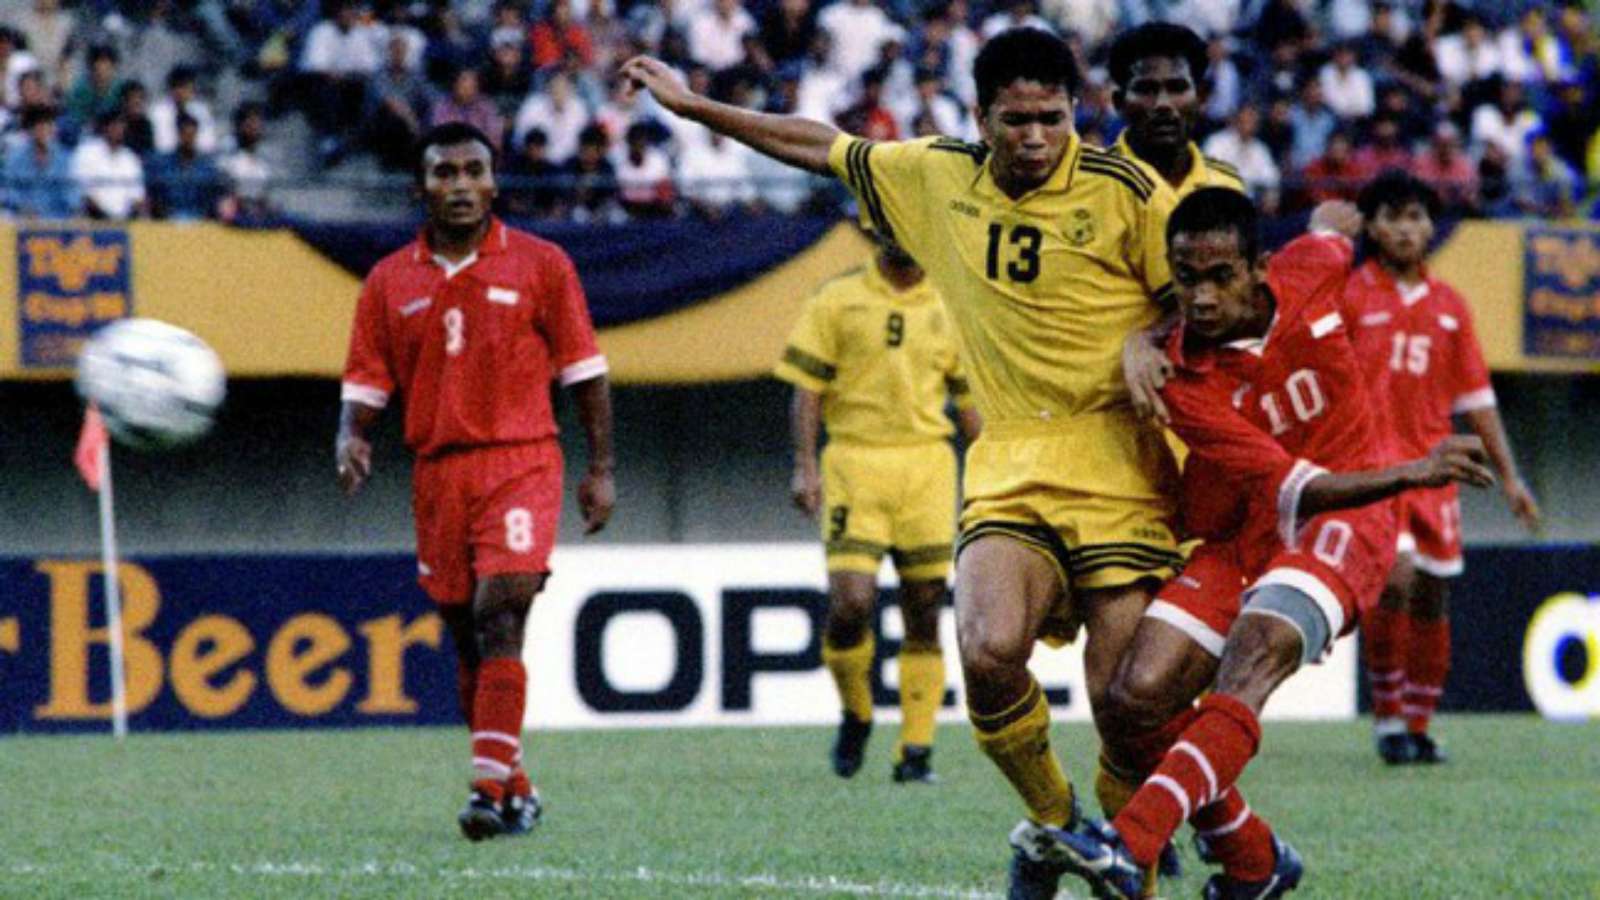 Rekam Jejak Timnas Indonesia di Babak Semifinal Piala AFF